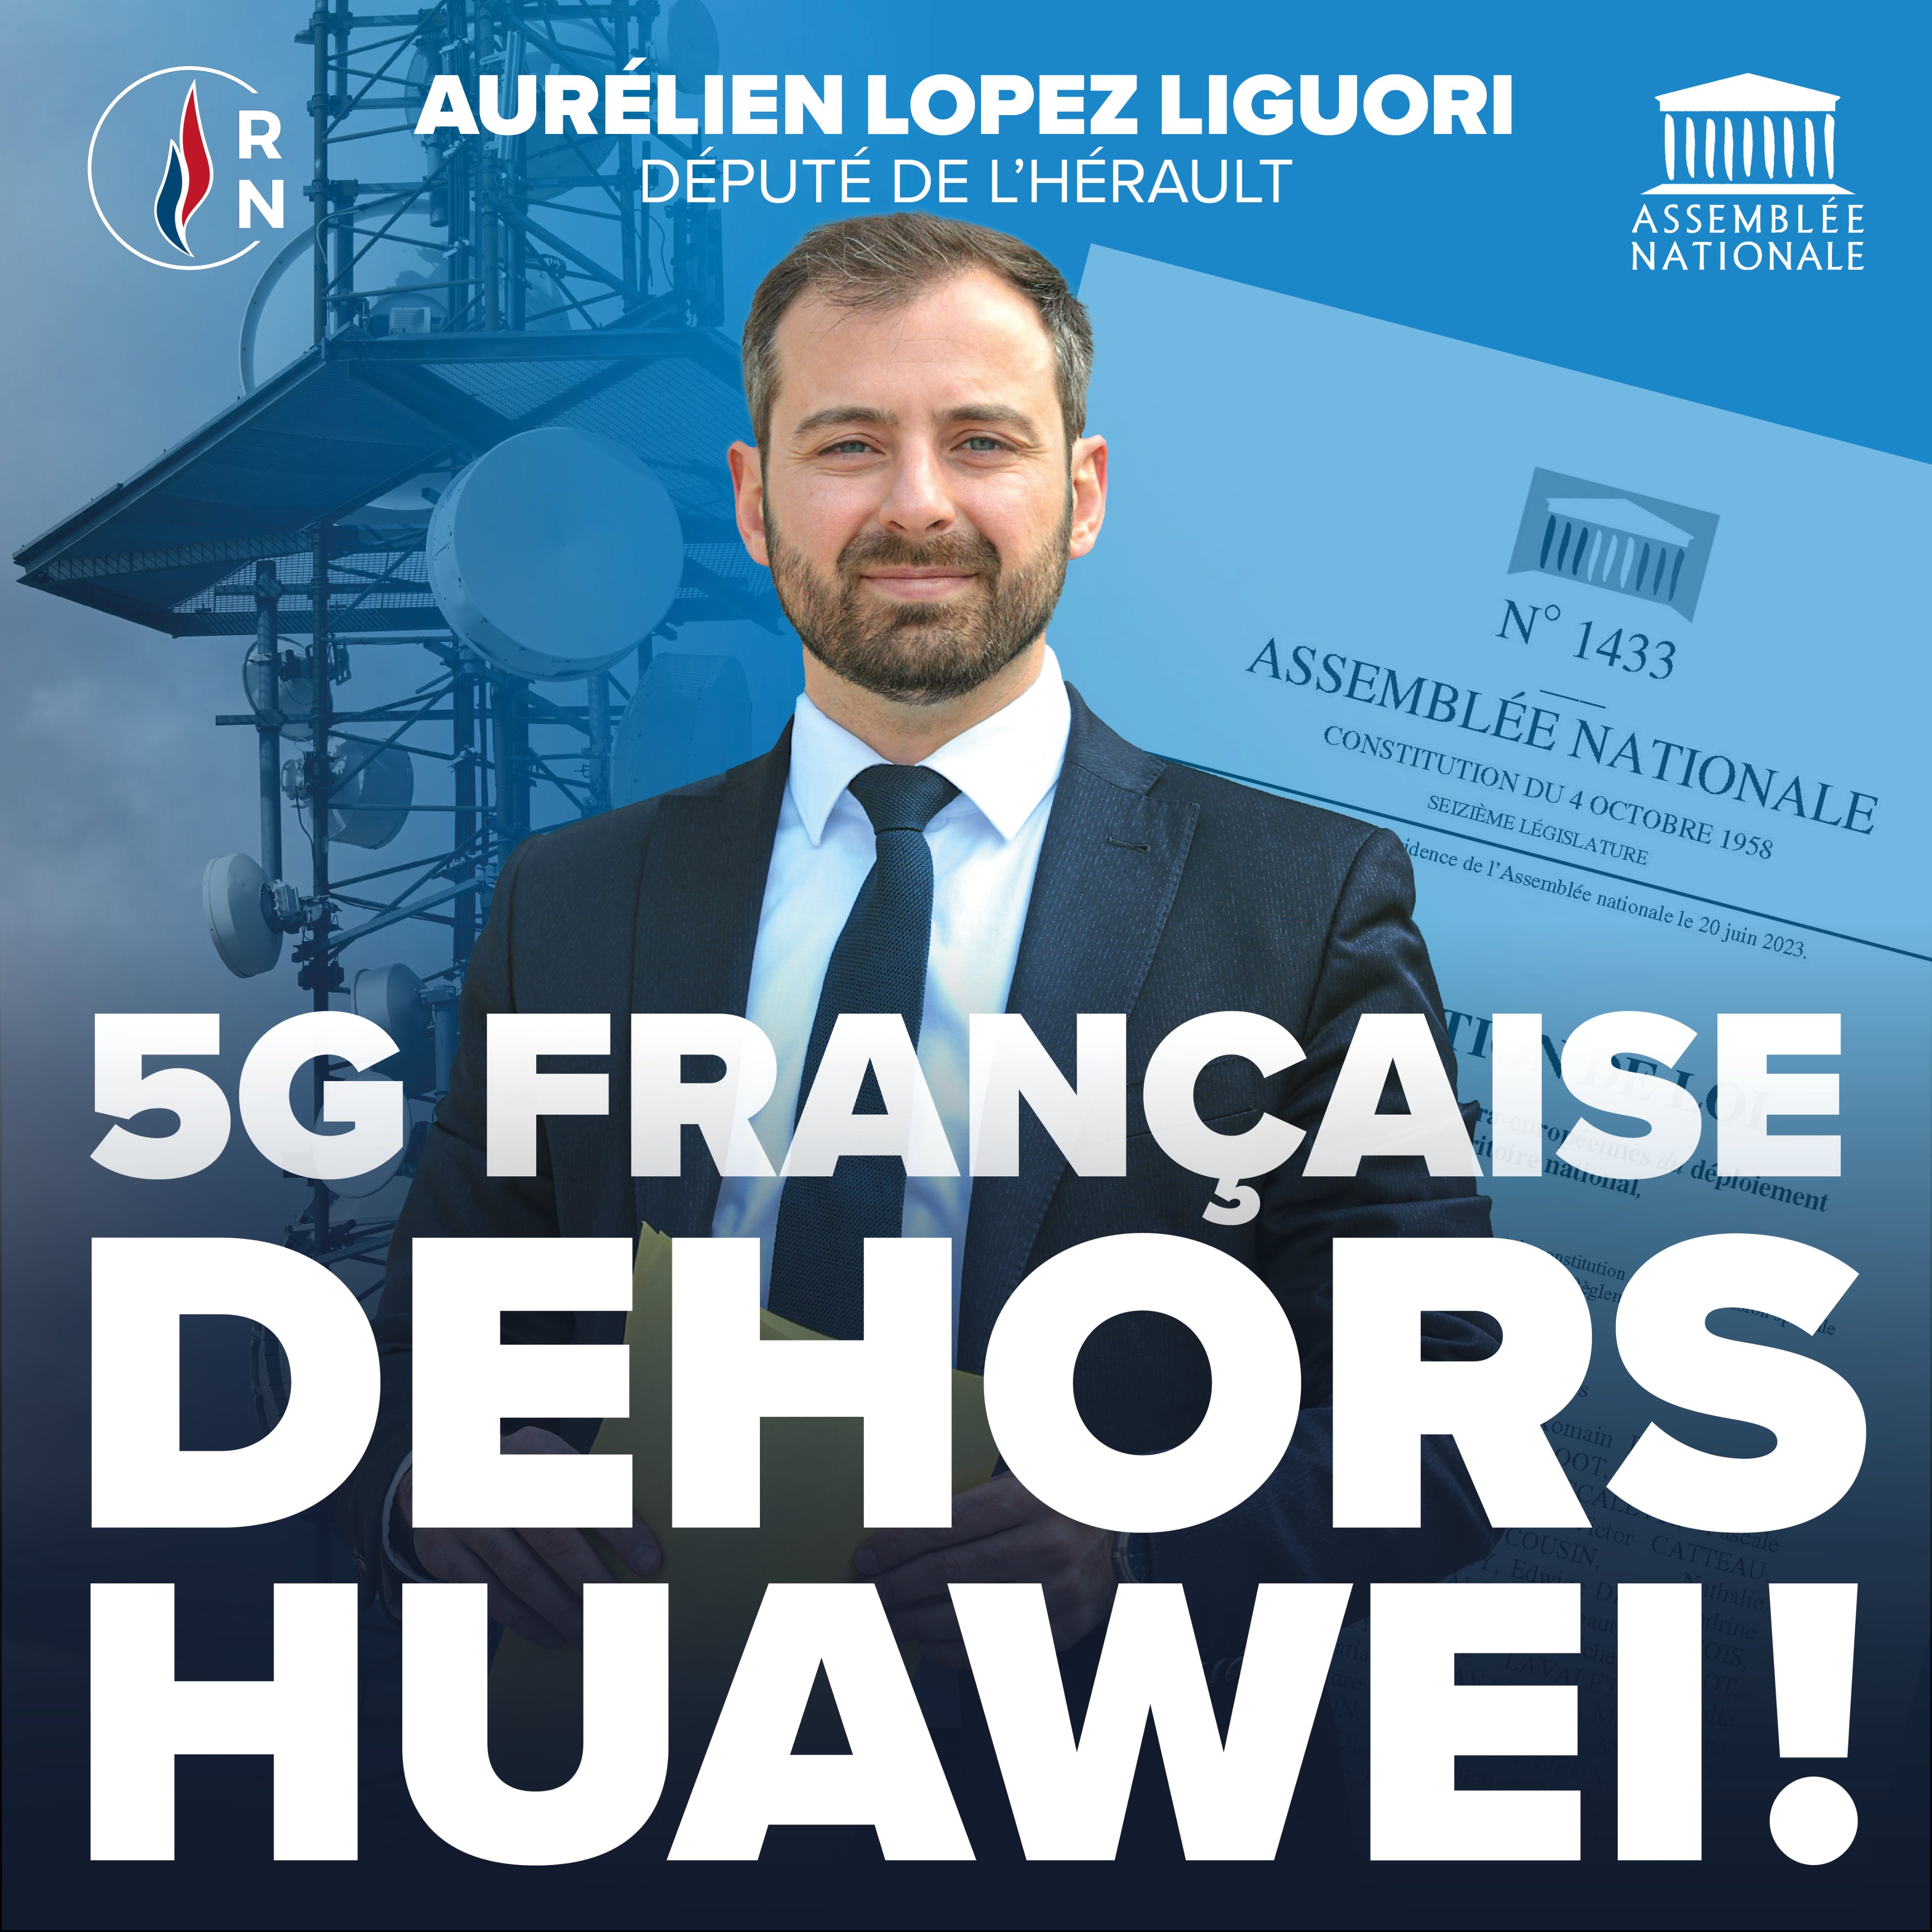  - Pour bannir la 5G Huawei de France Aurélien Lopez-Liguori dépose une proposition de loi